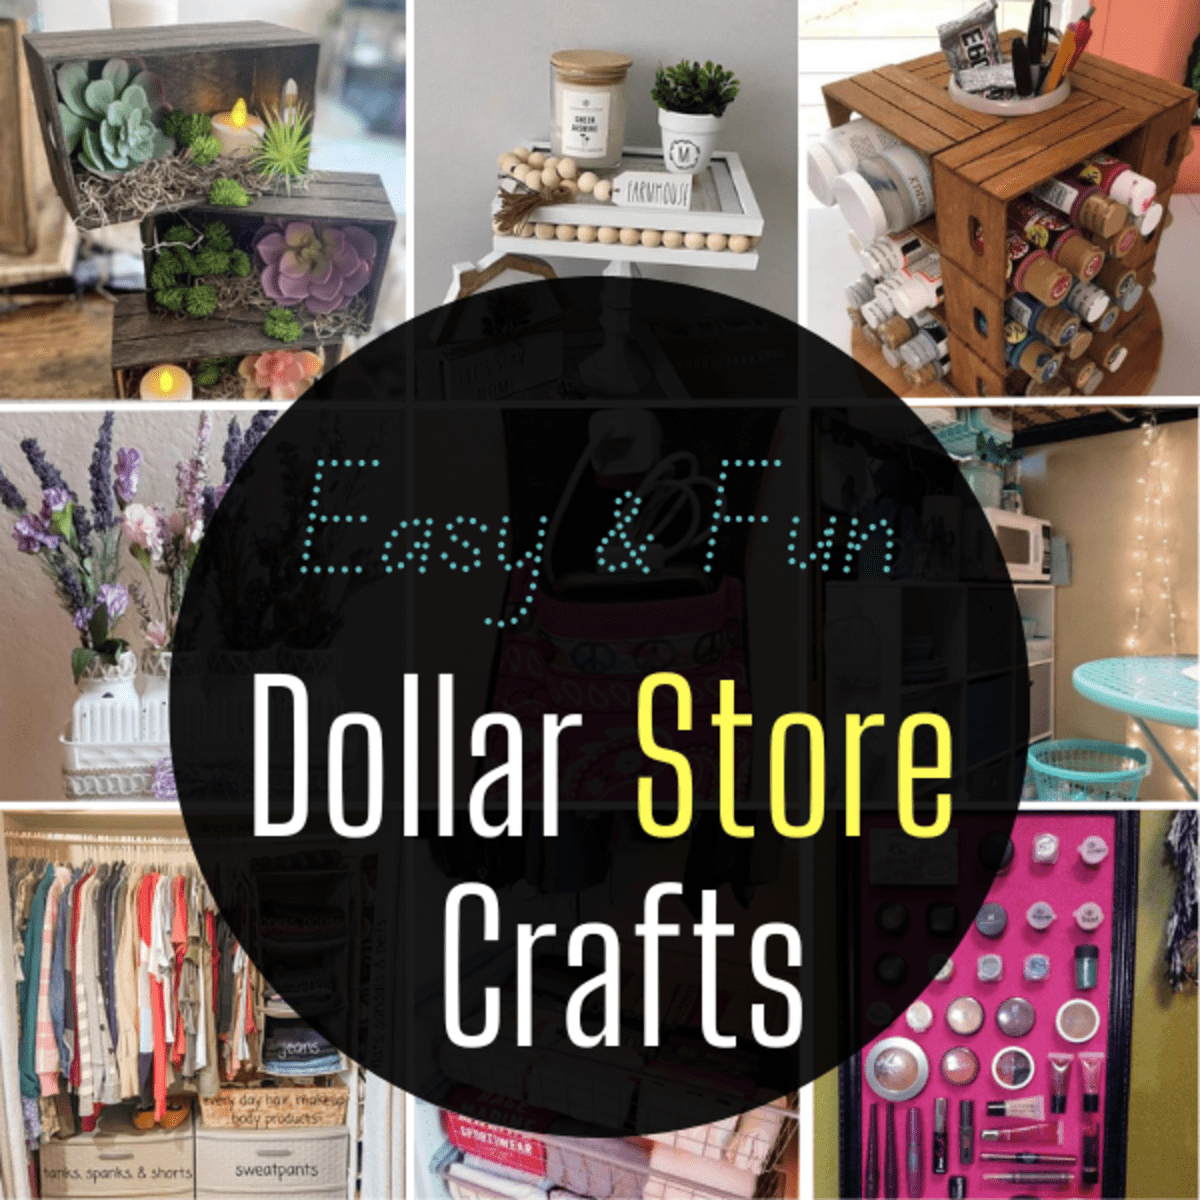 10 Vertical Craft Storage Ideas  Dollar store crafts, Dollar